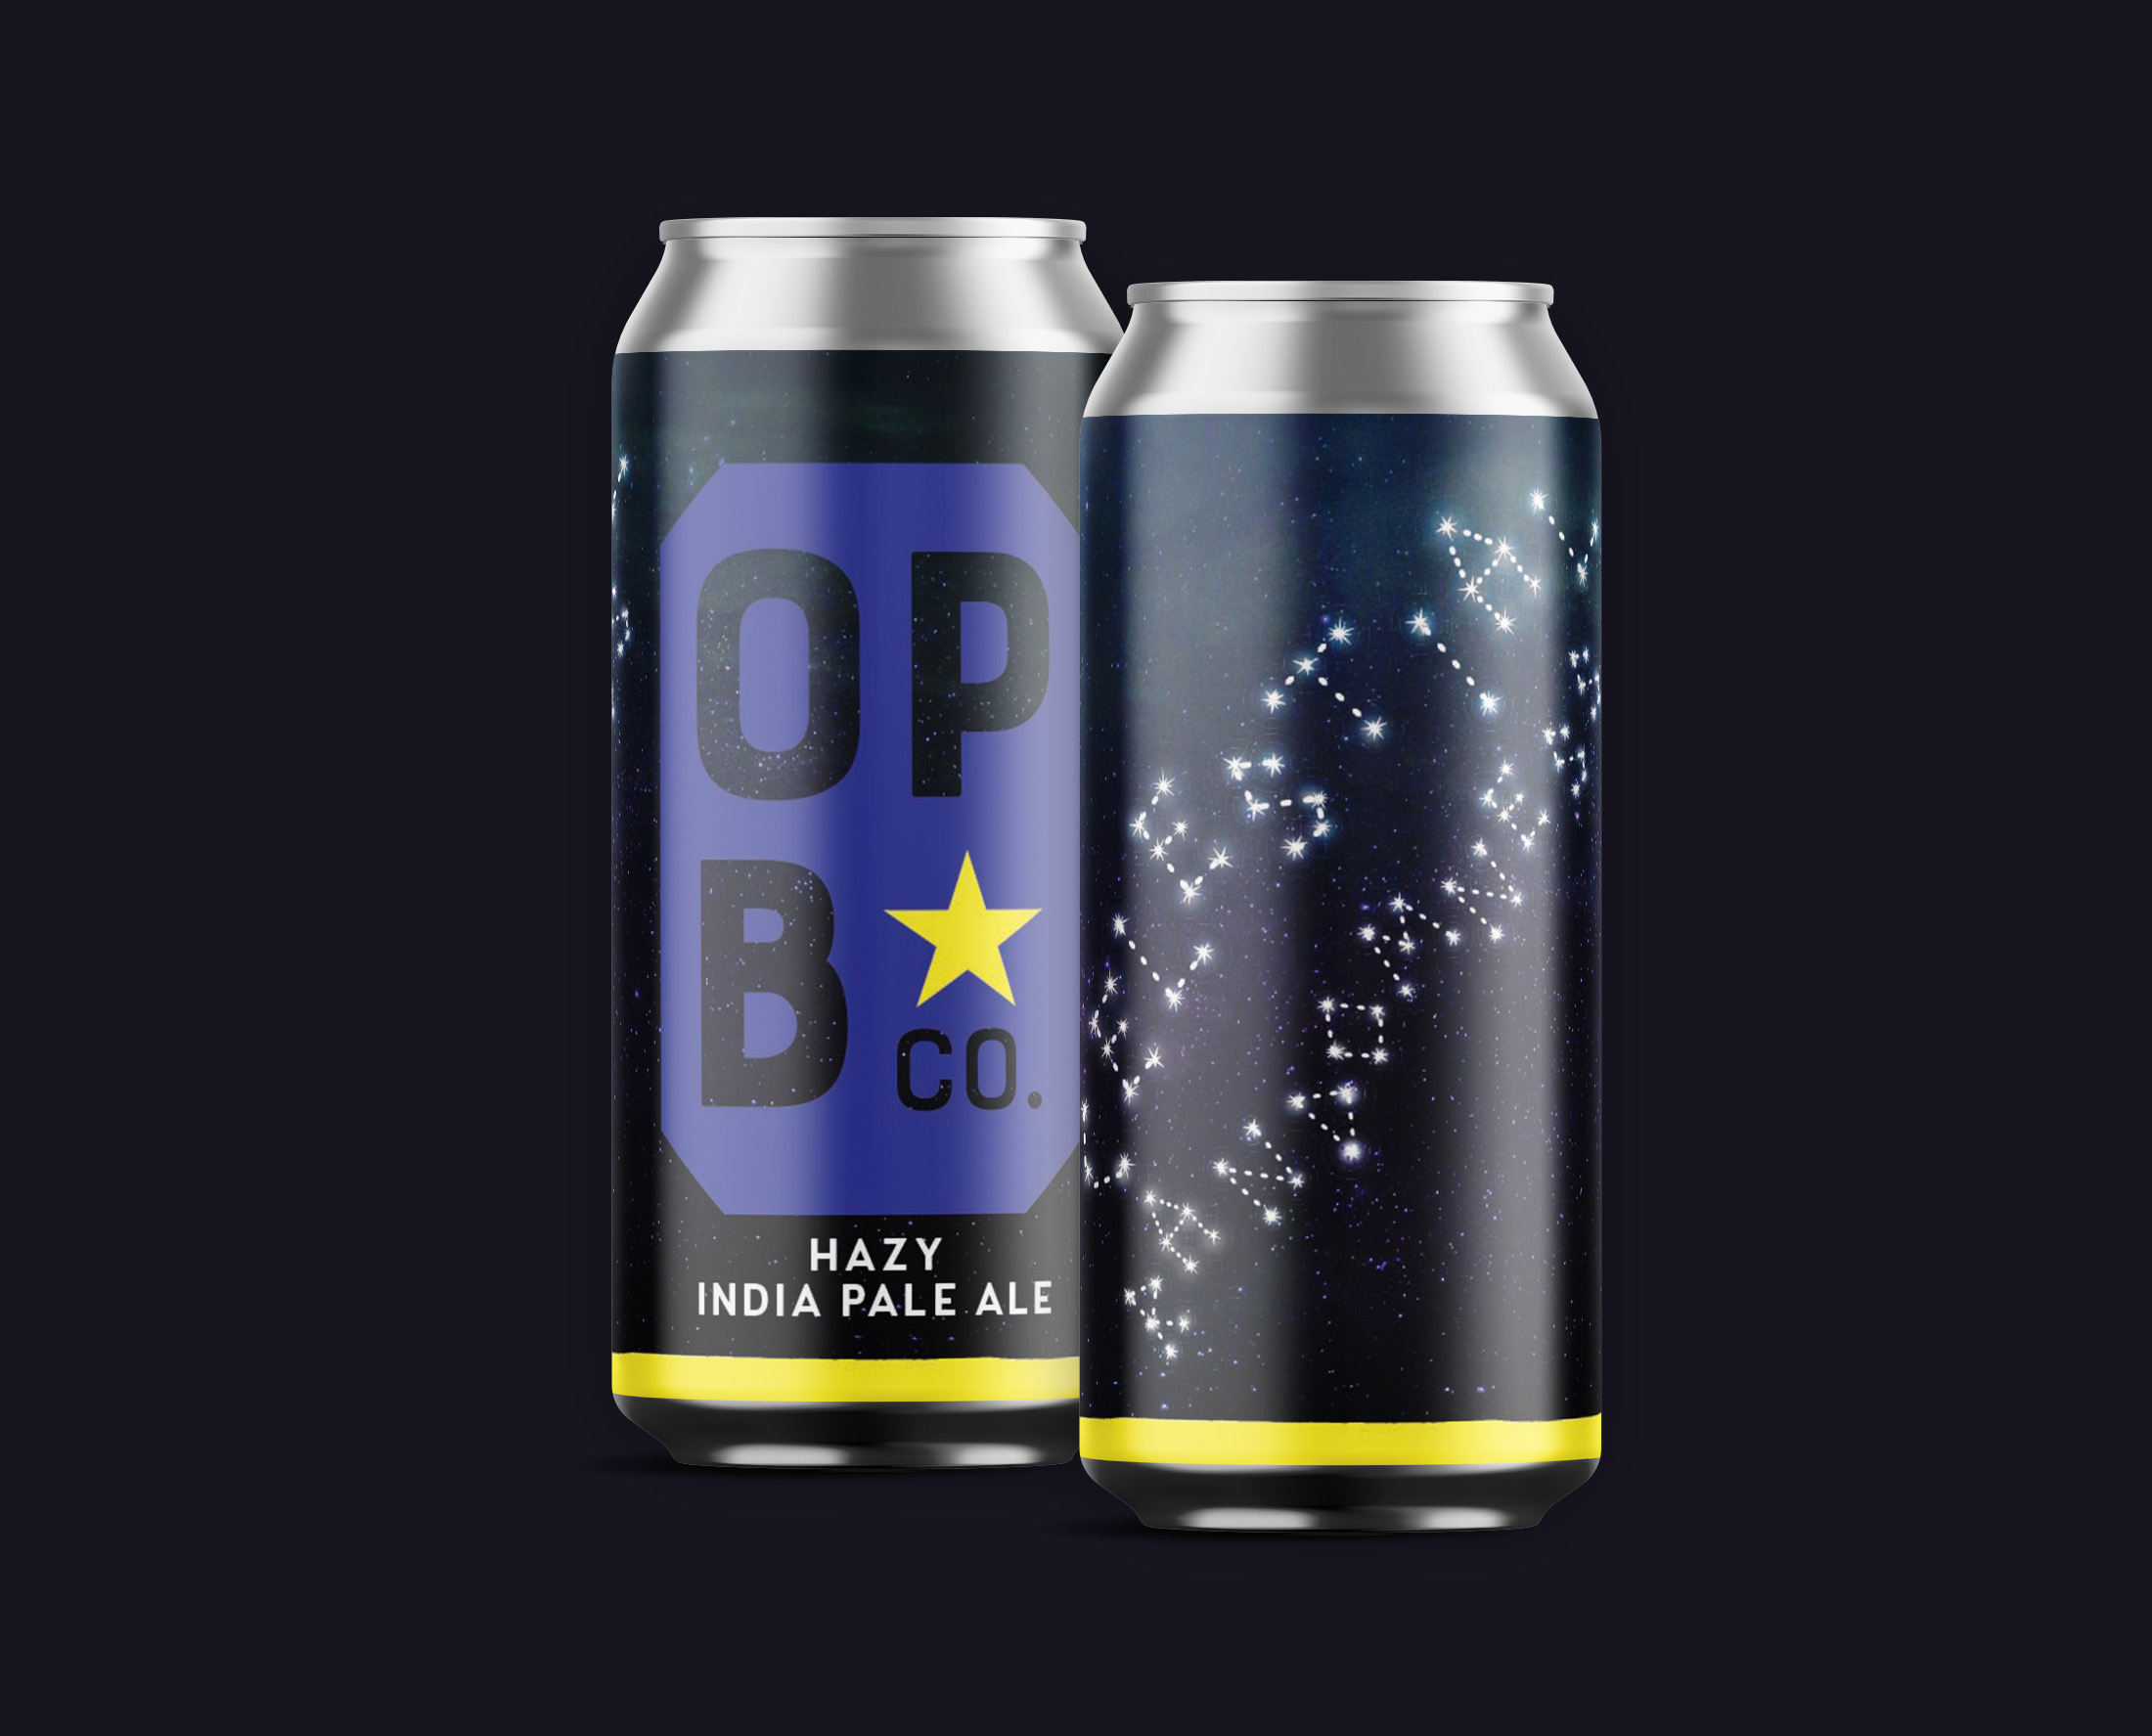 Digital rendering of randomness hazy IPA beer. 2 cans